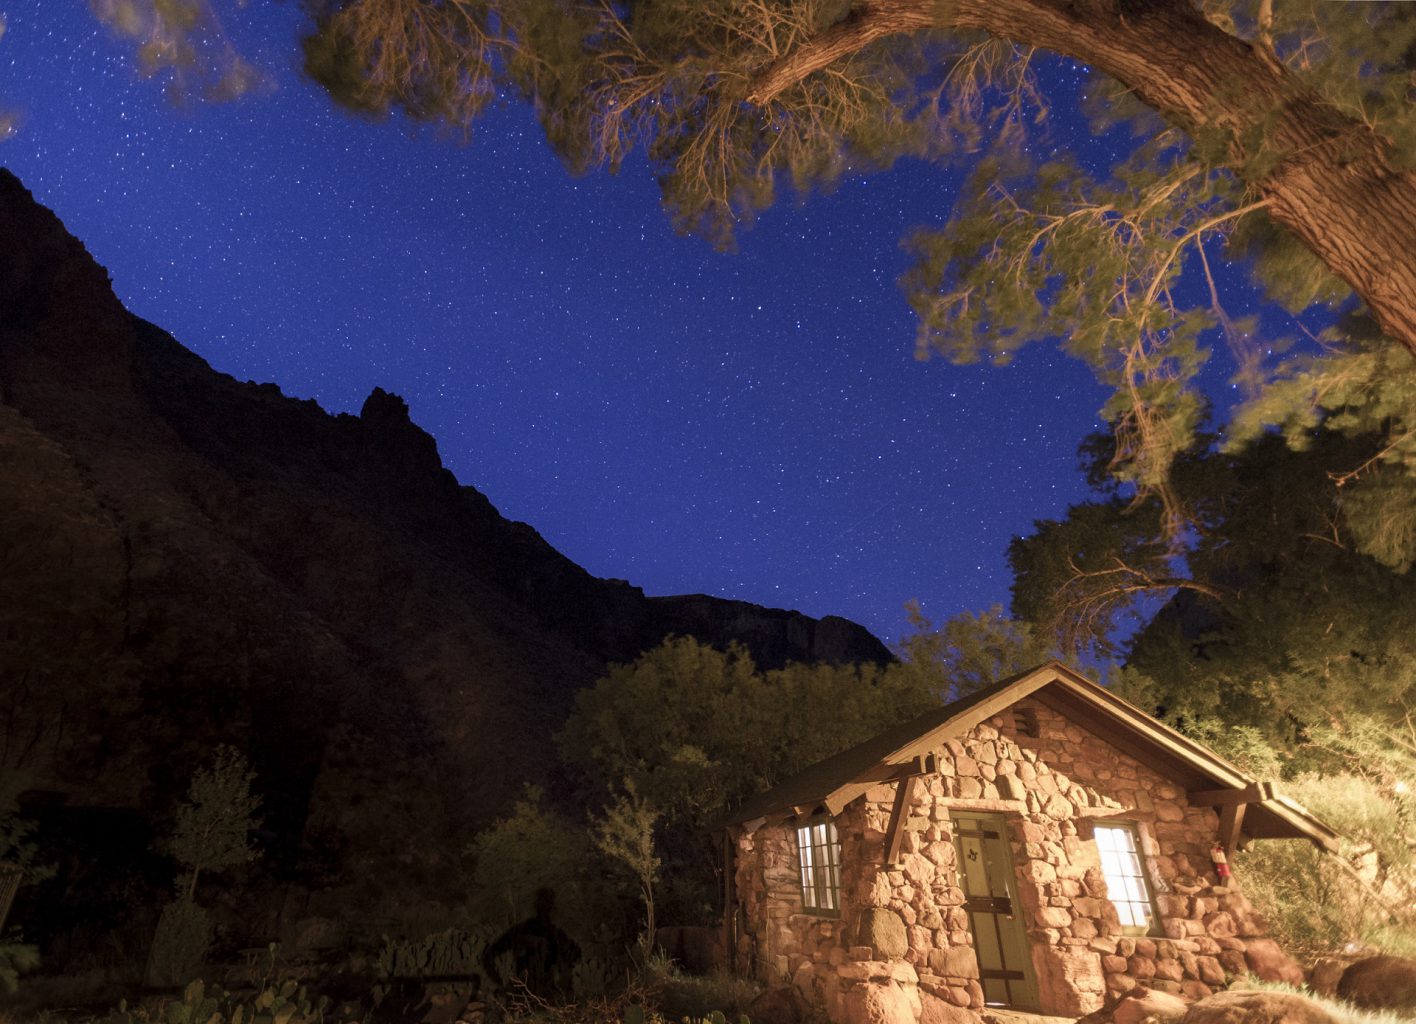 Grand Canyon's Phantom Ranch at night